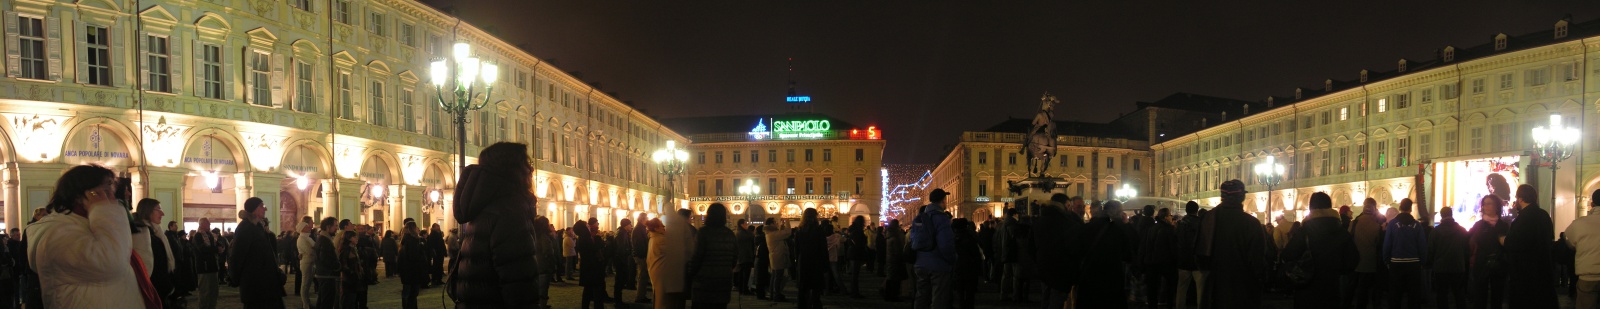 Panorama di Piazza S.Carlo